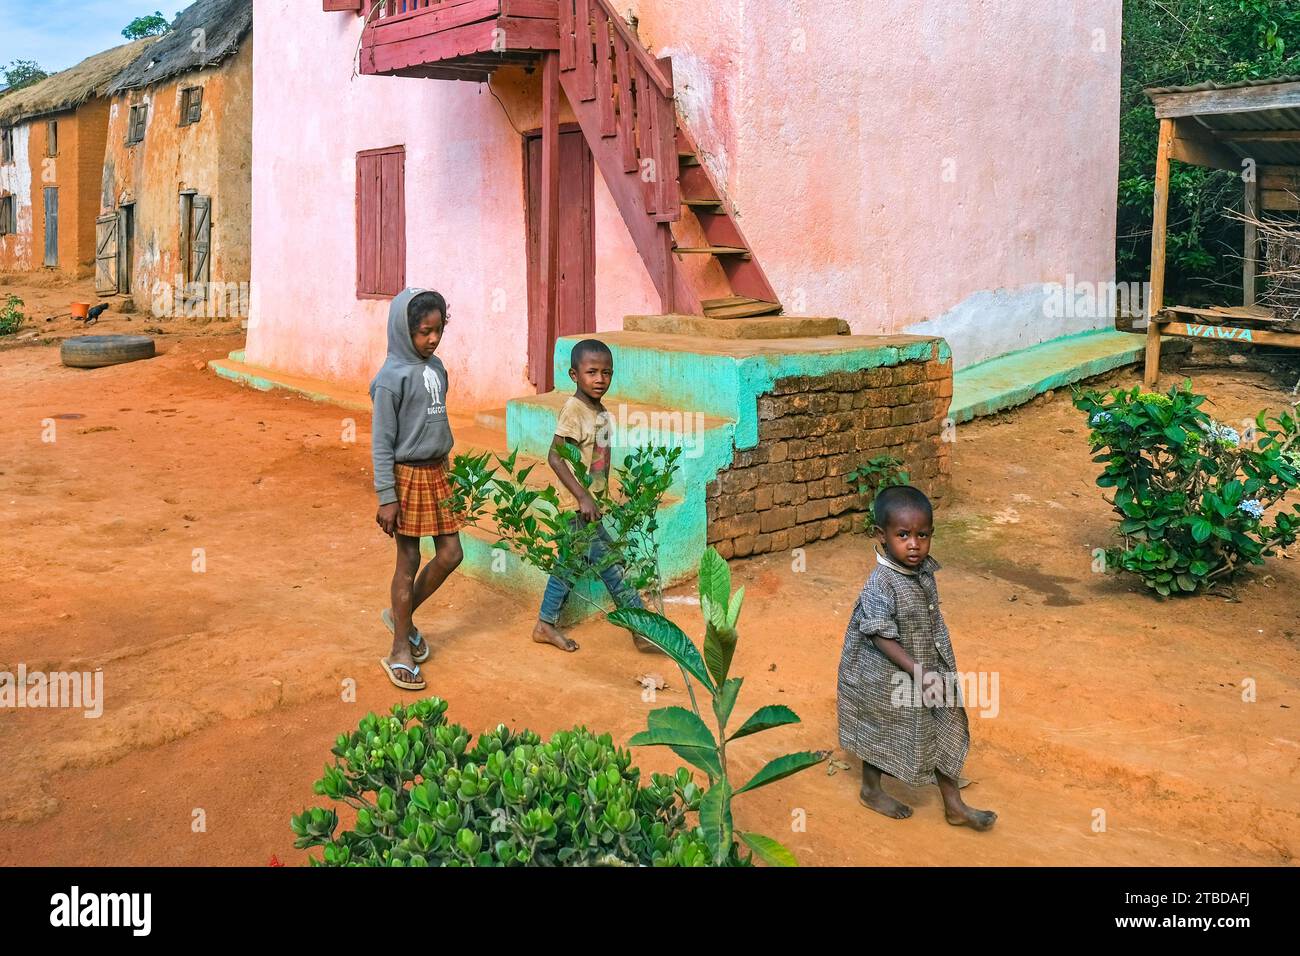 Bambini malgasci in strada di villaggio rurale con case tradizionali nel distretto di Ambositra, regione di Amoron'i Mania, Madagascar centrale, Africa Foto Stock